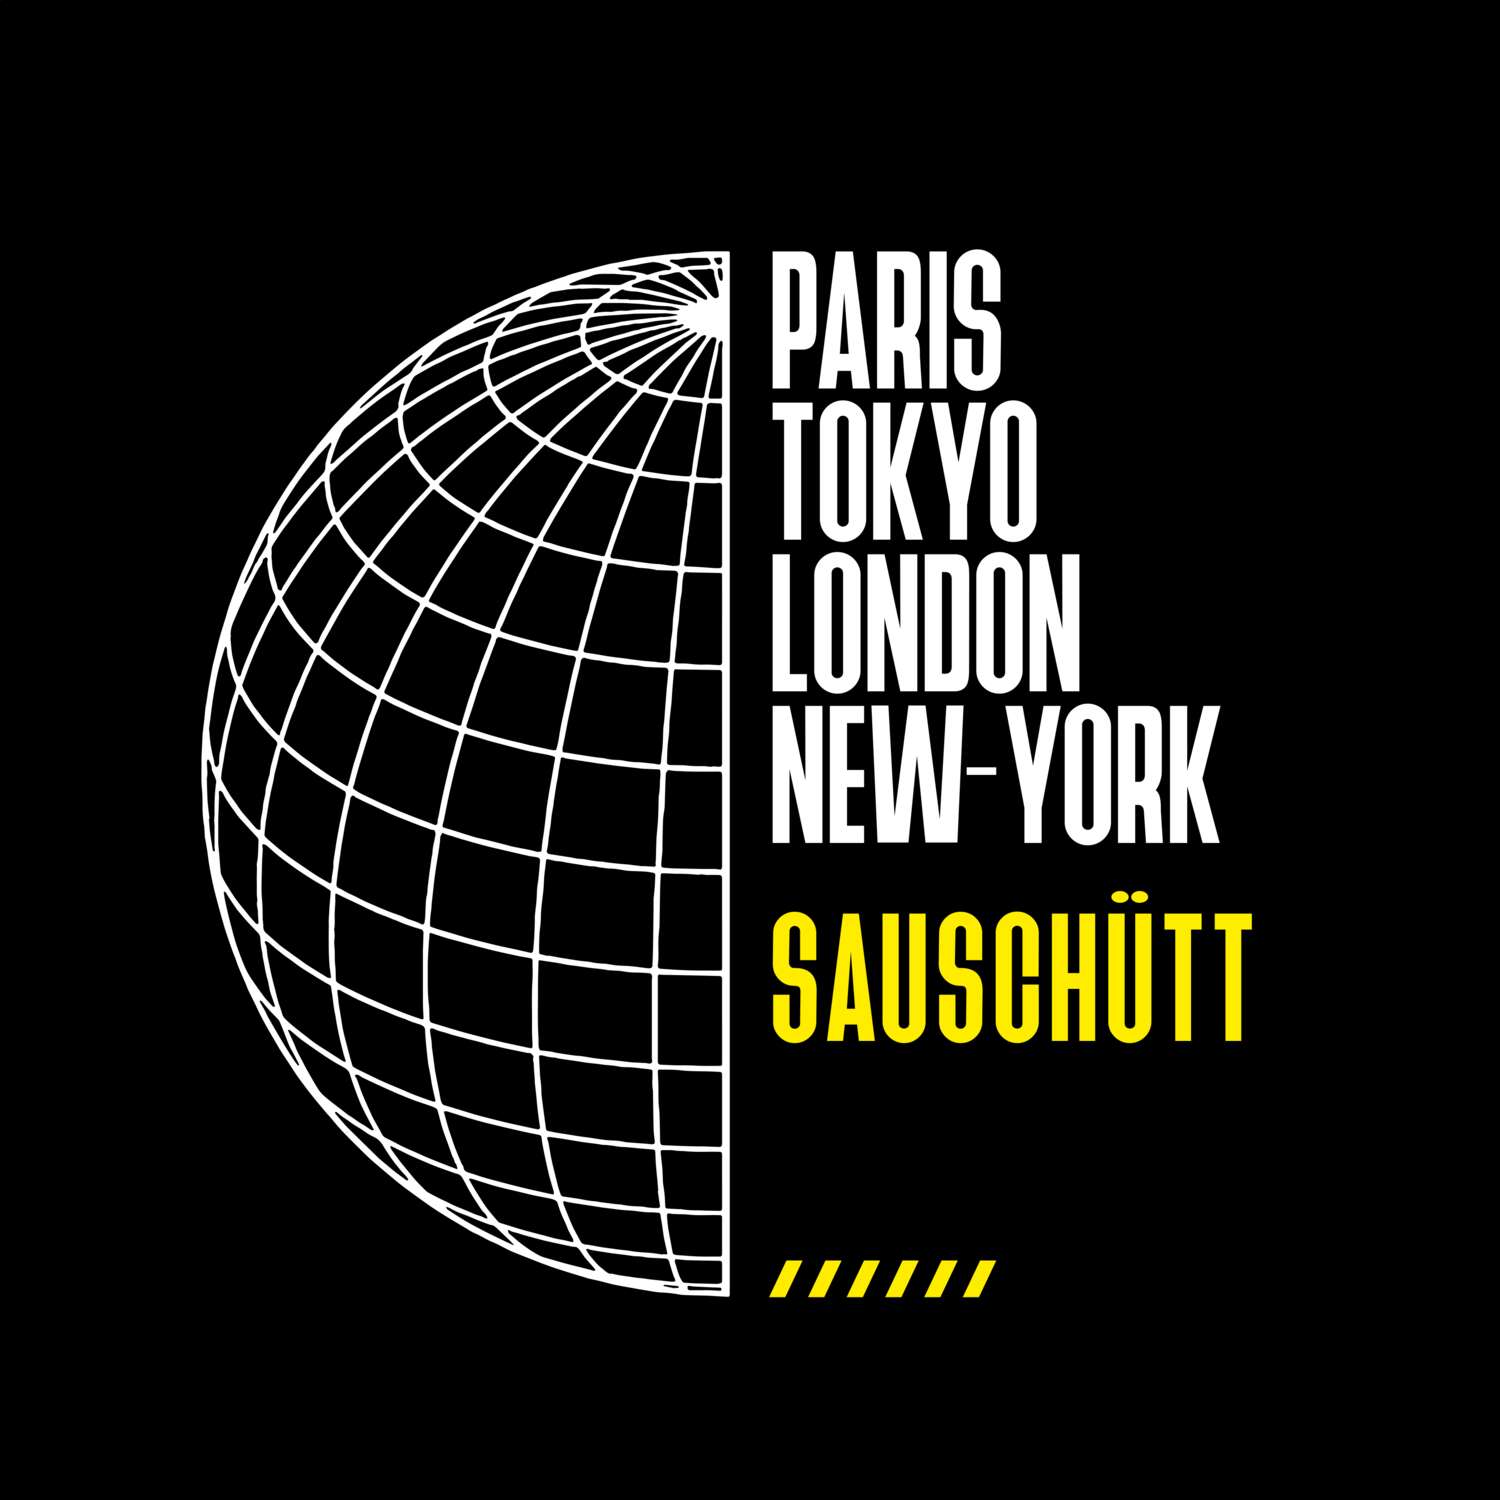 Sauschütt T-Shirt »Paris Tokyo London«